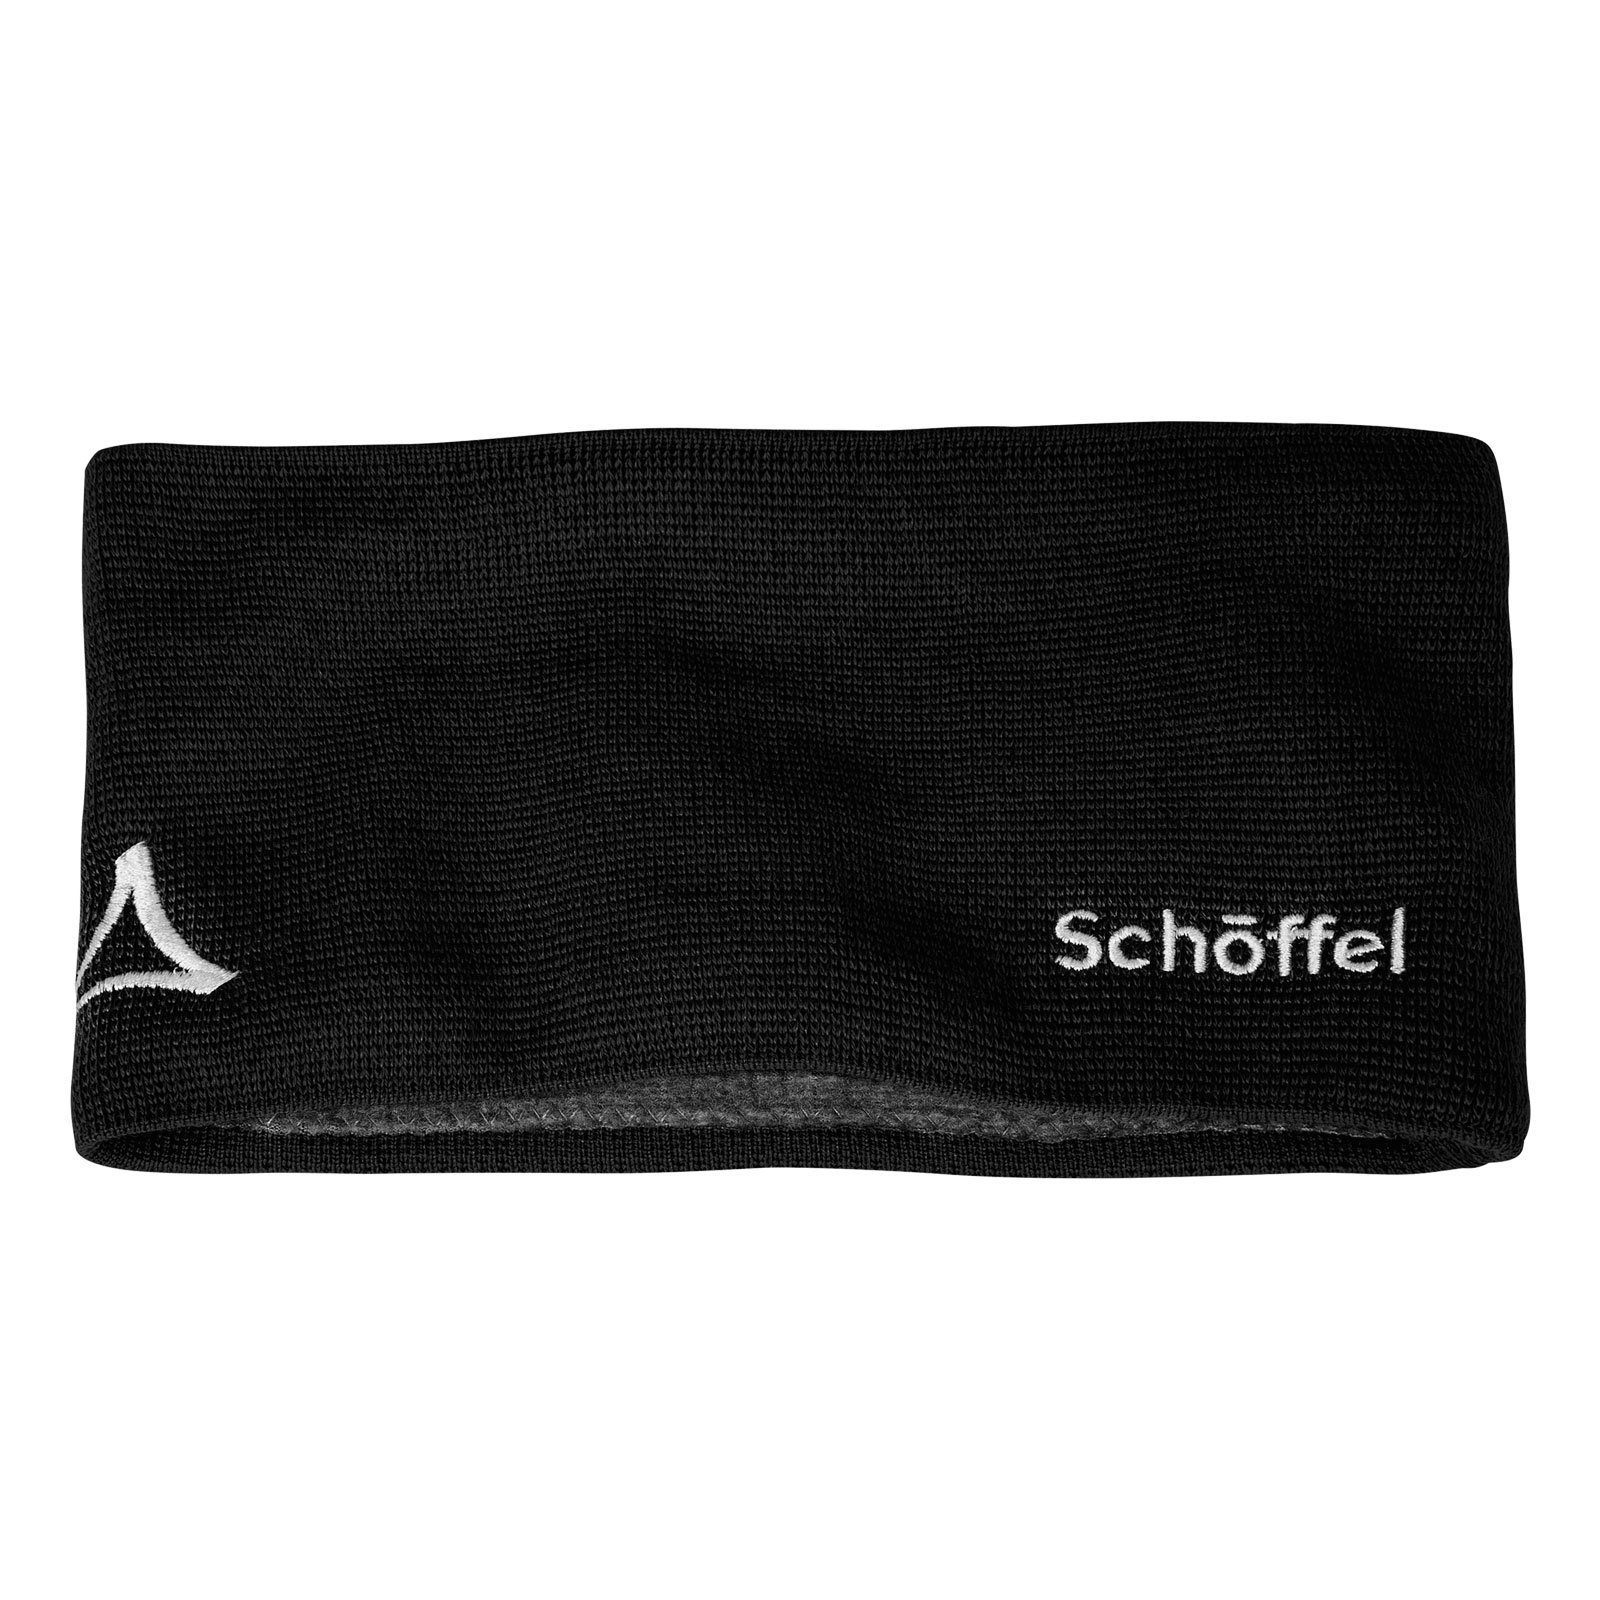 Schöffel Stirnband Knitted Headband Fornet mit Markenlogo Schwarz